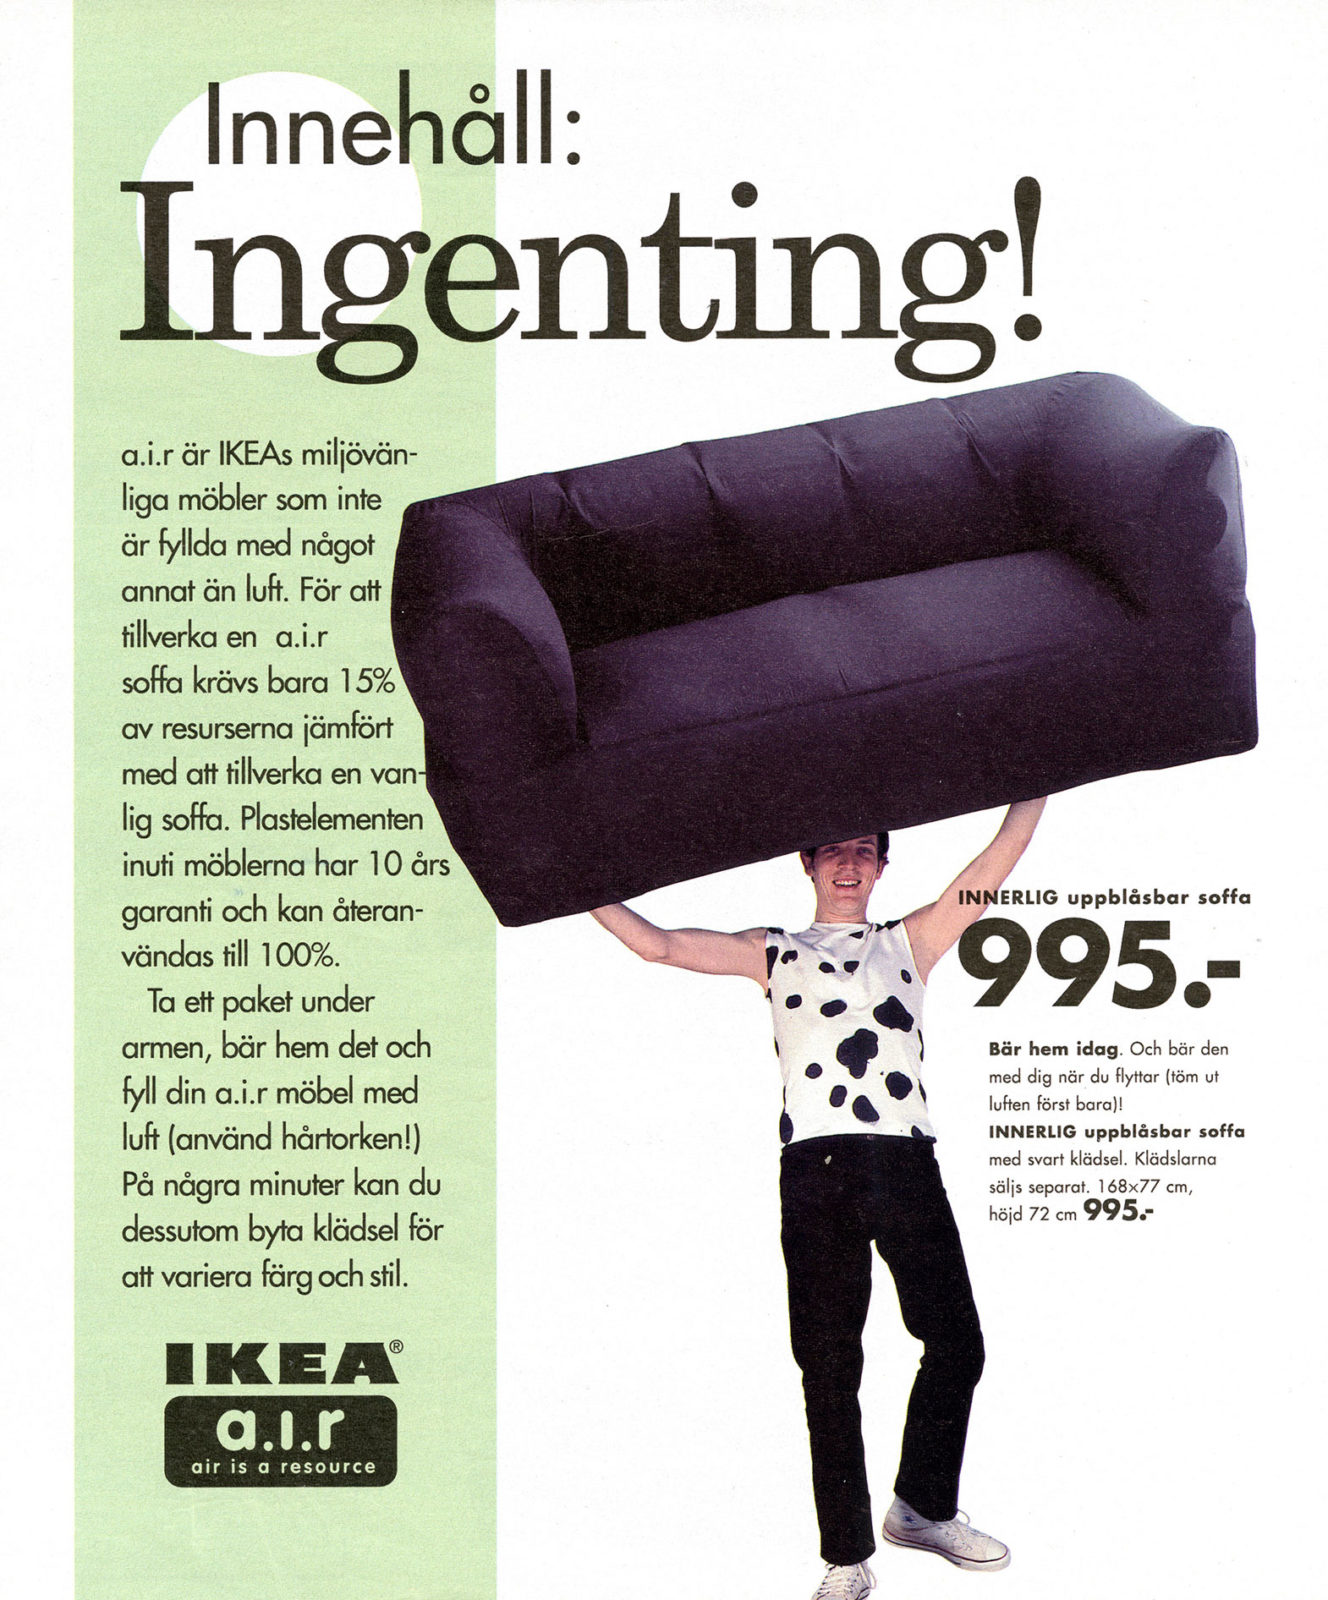 Page du catalogue IKEA, homme soulevant un canapé, à gauche, texte sur mobilier gonflable de la collection IKEA a.i.r.